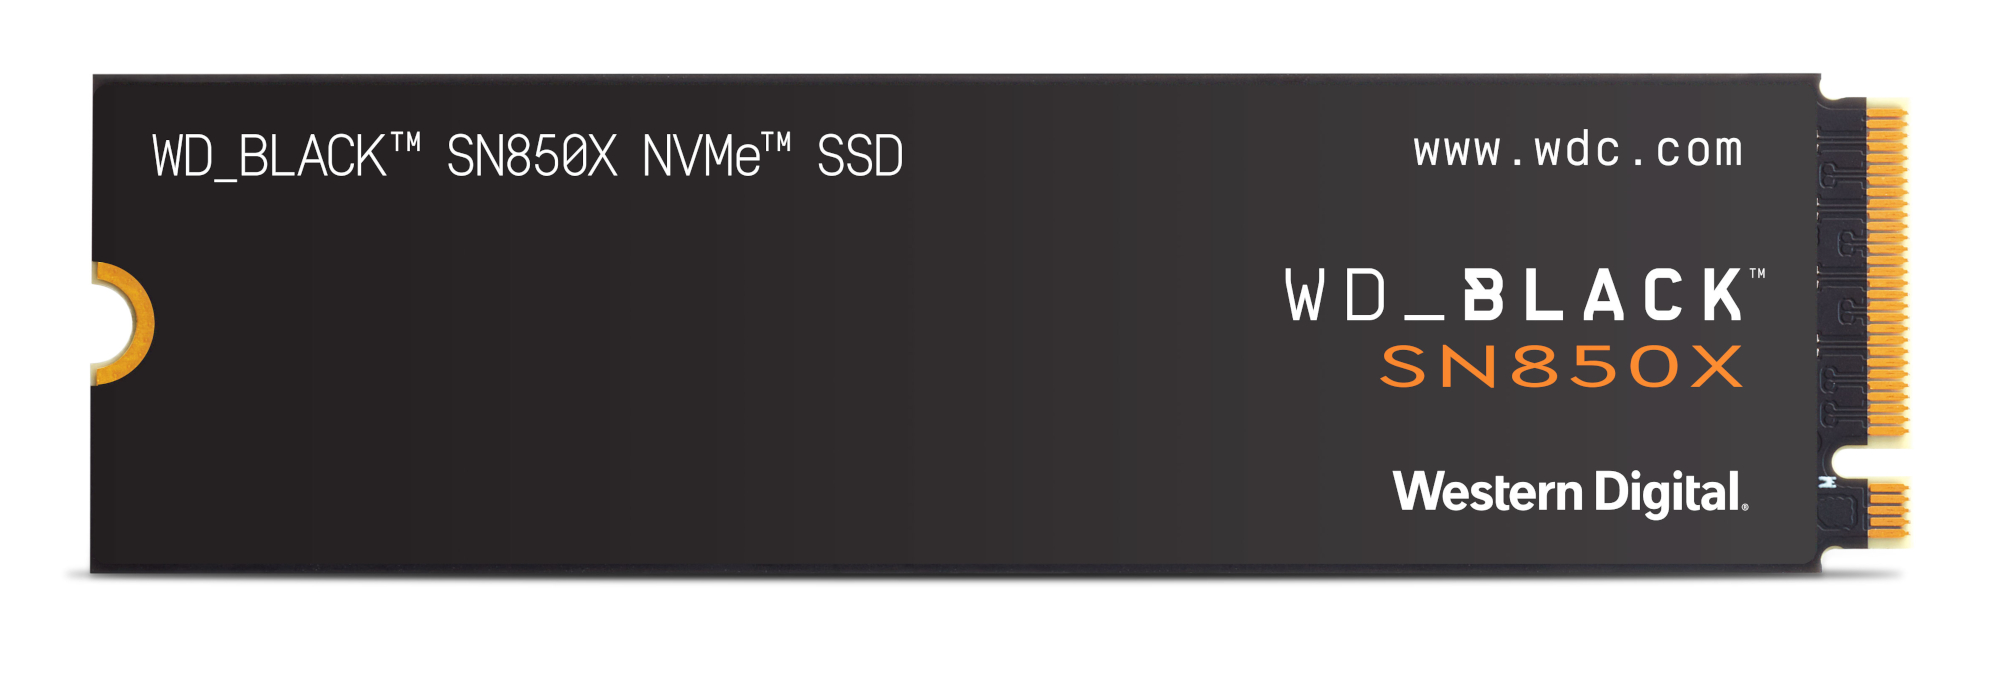 WD Black SN850X - Secondo classificato come miglior SSD PCIe 4.0